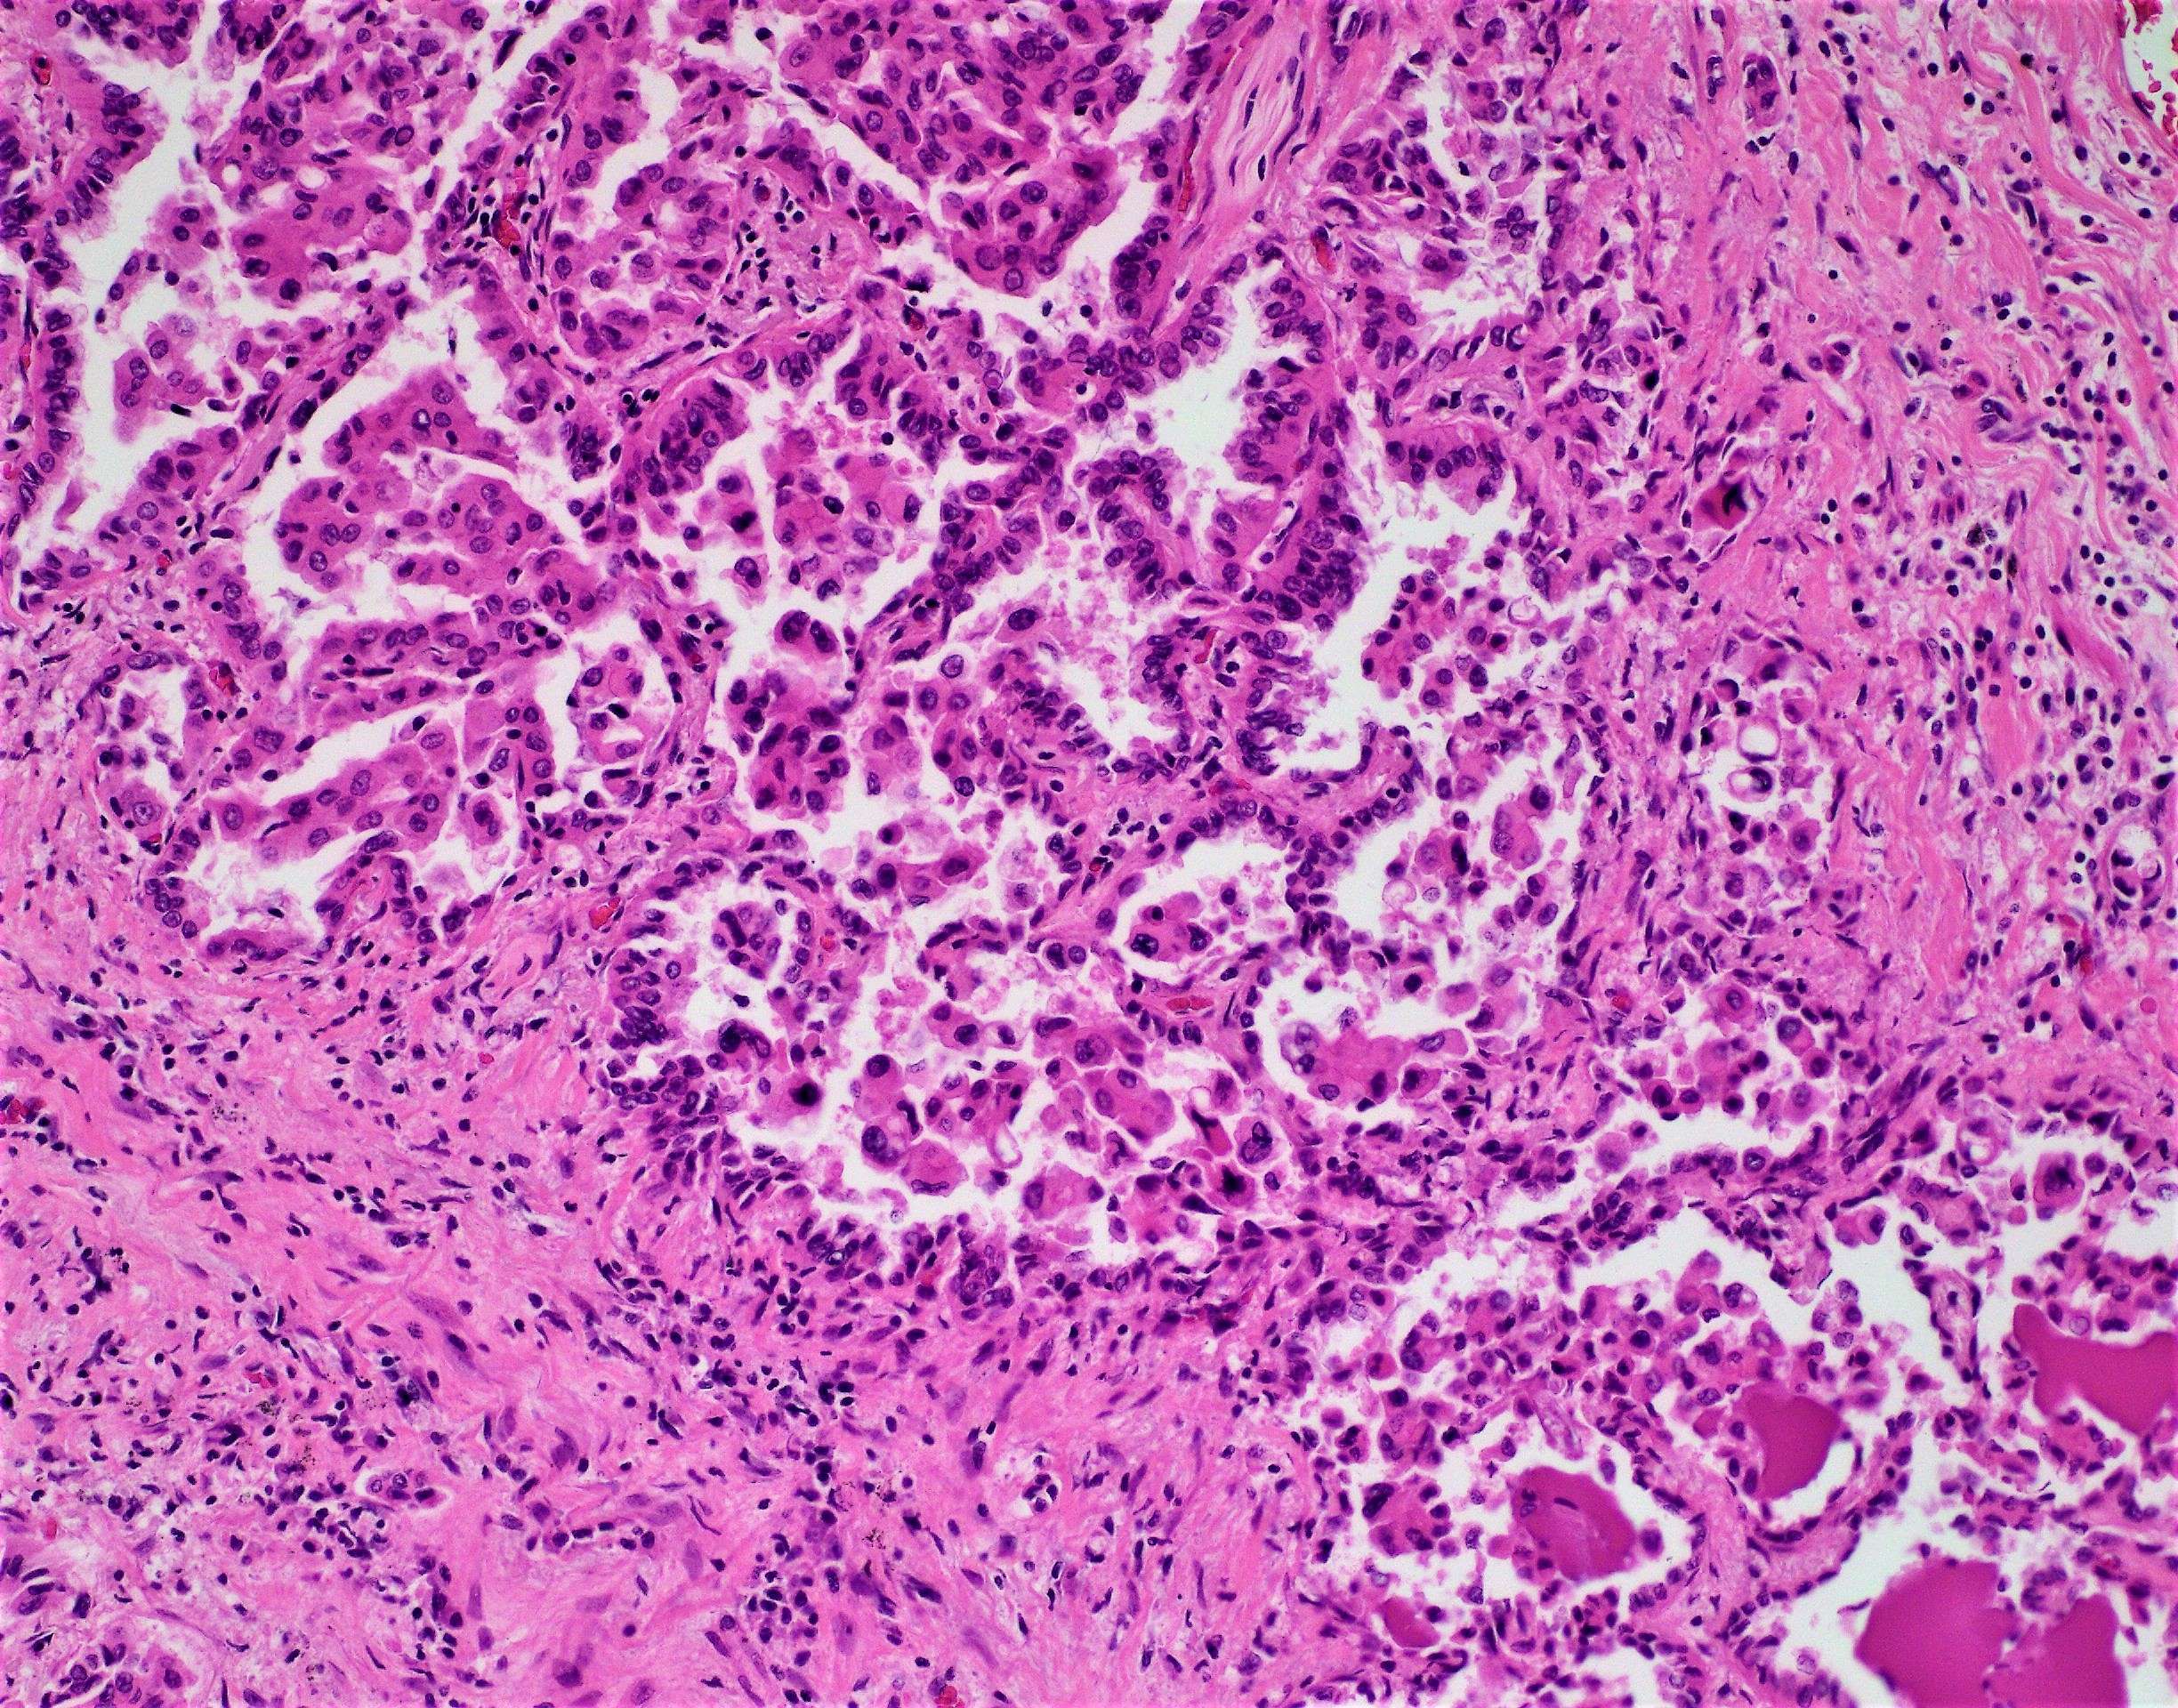 Pulmonary adenocarcinoma – BosnianPathology